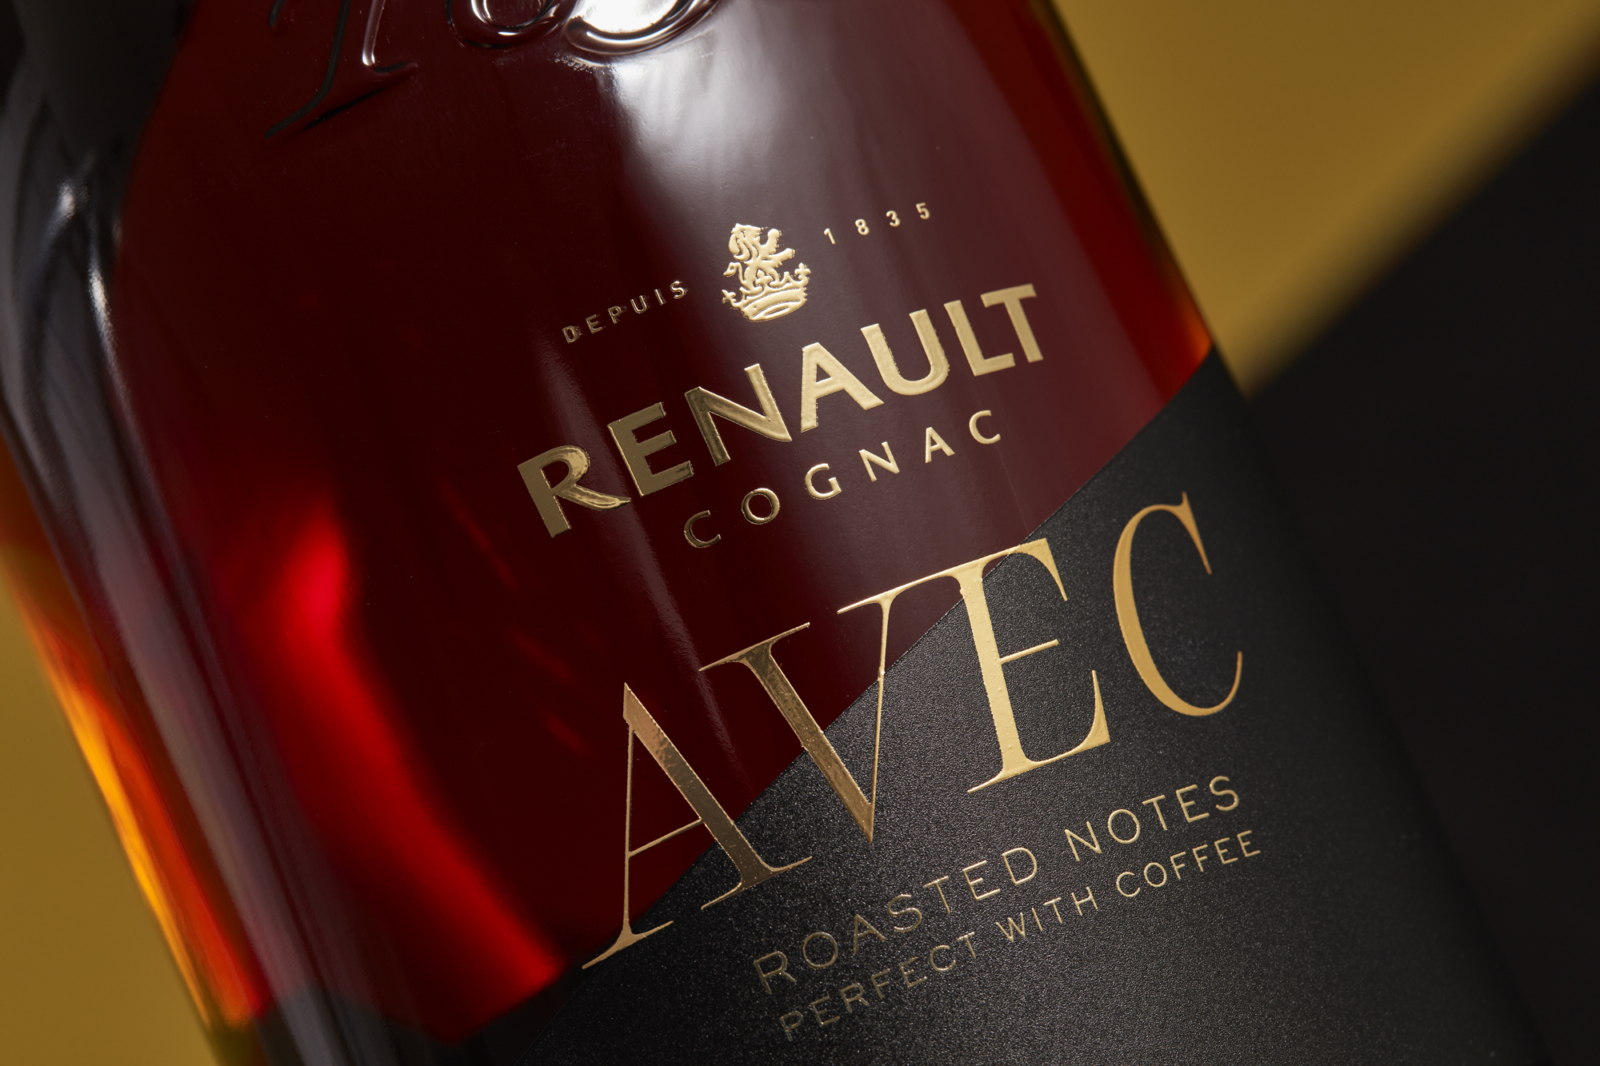 Renault Cognac AVEC - Un design pensé par l’agence de design de Paris Partisan du Sens.